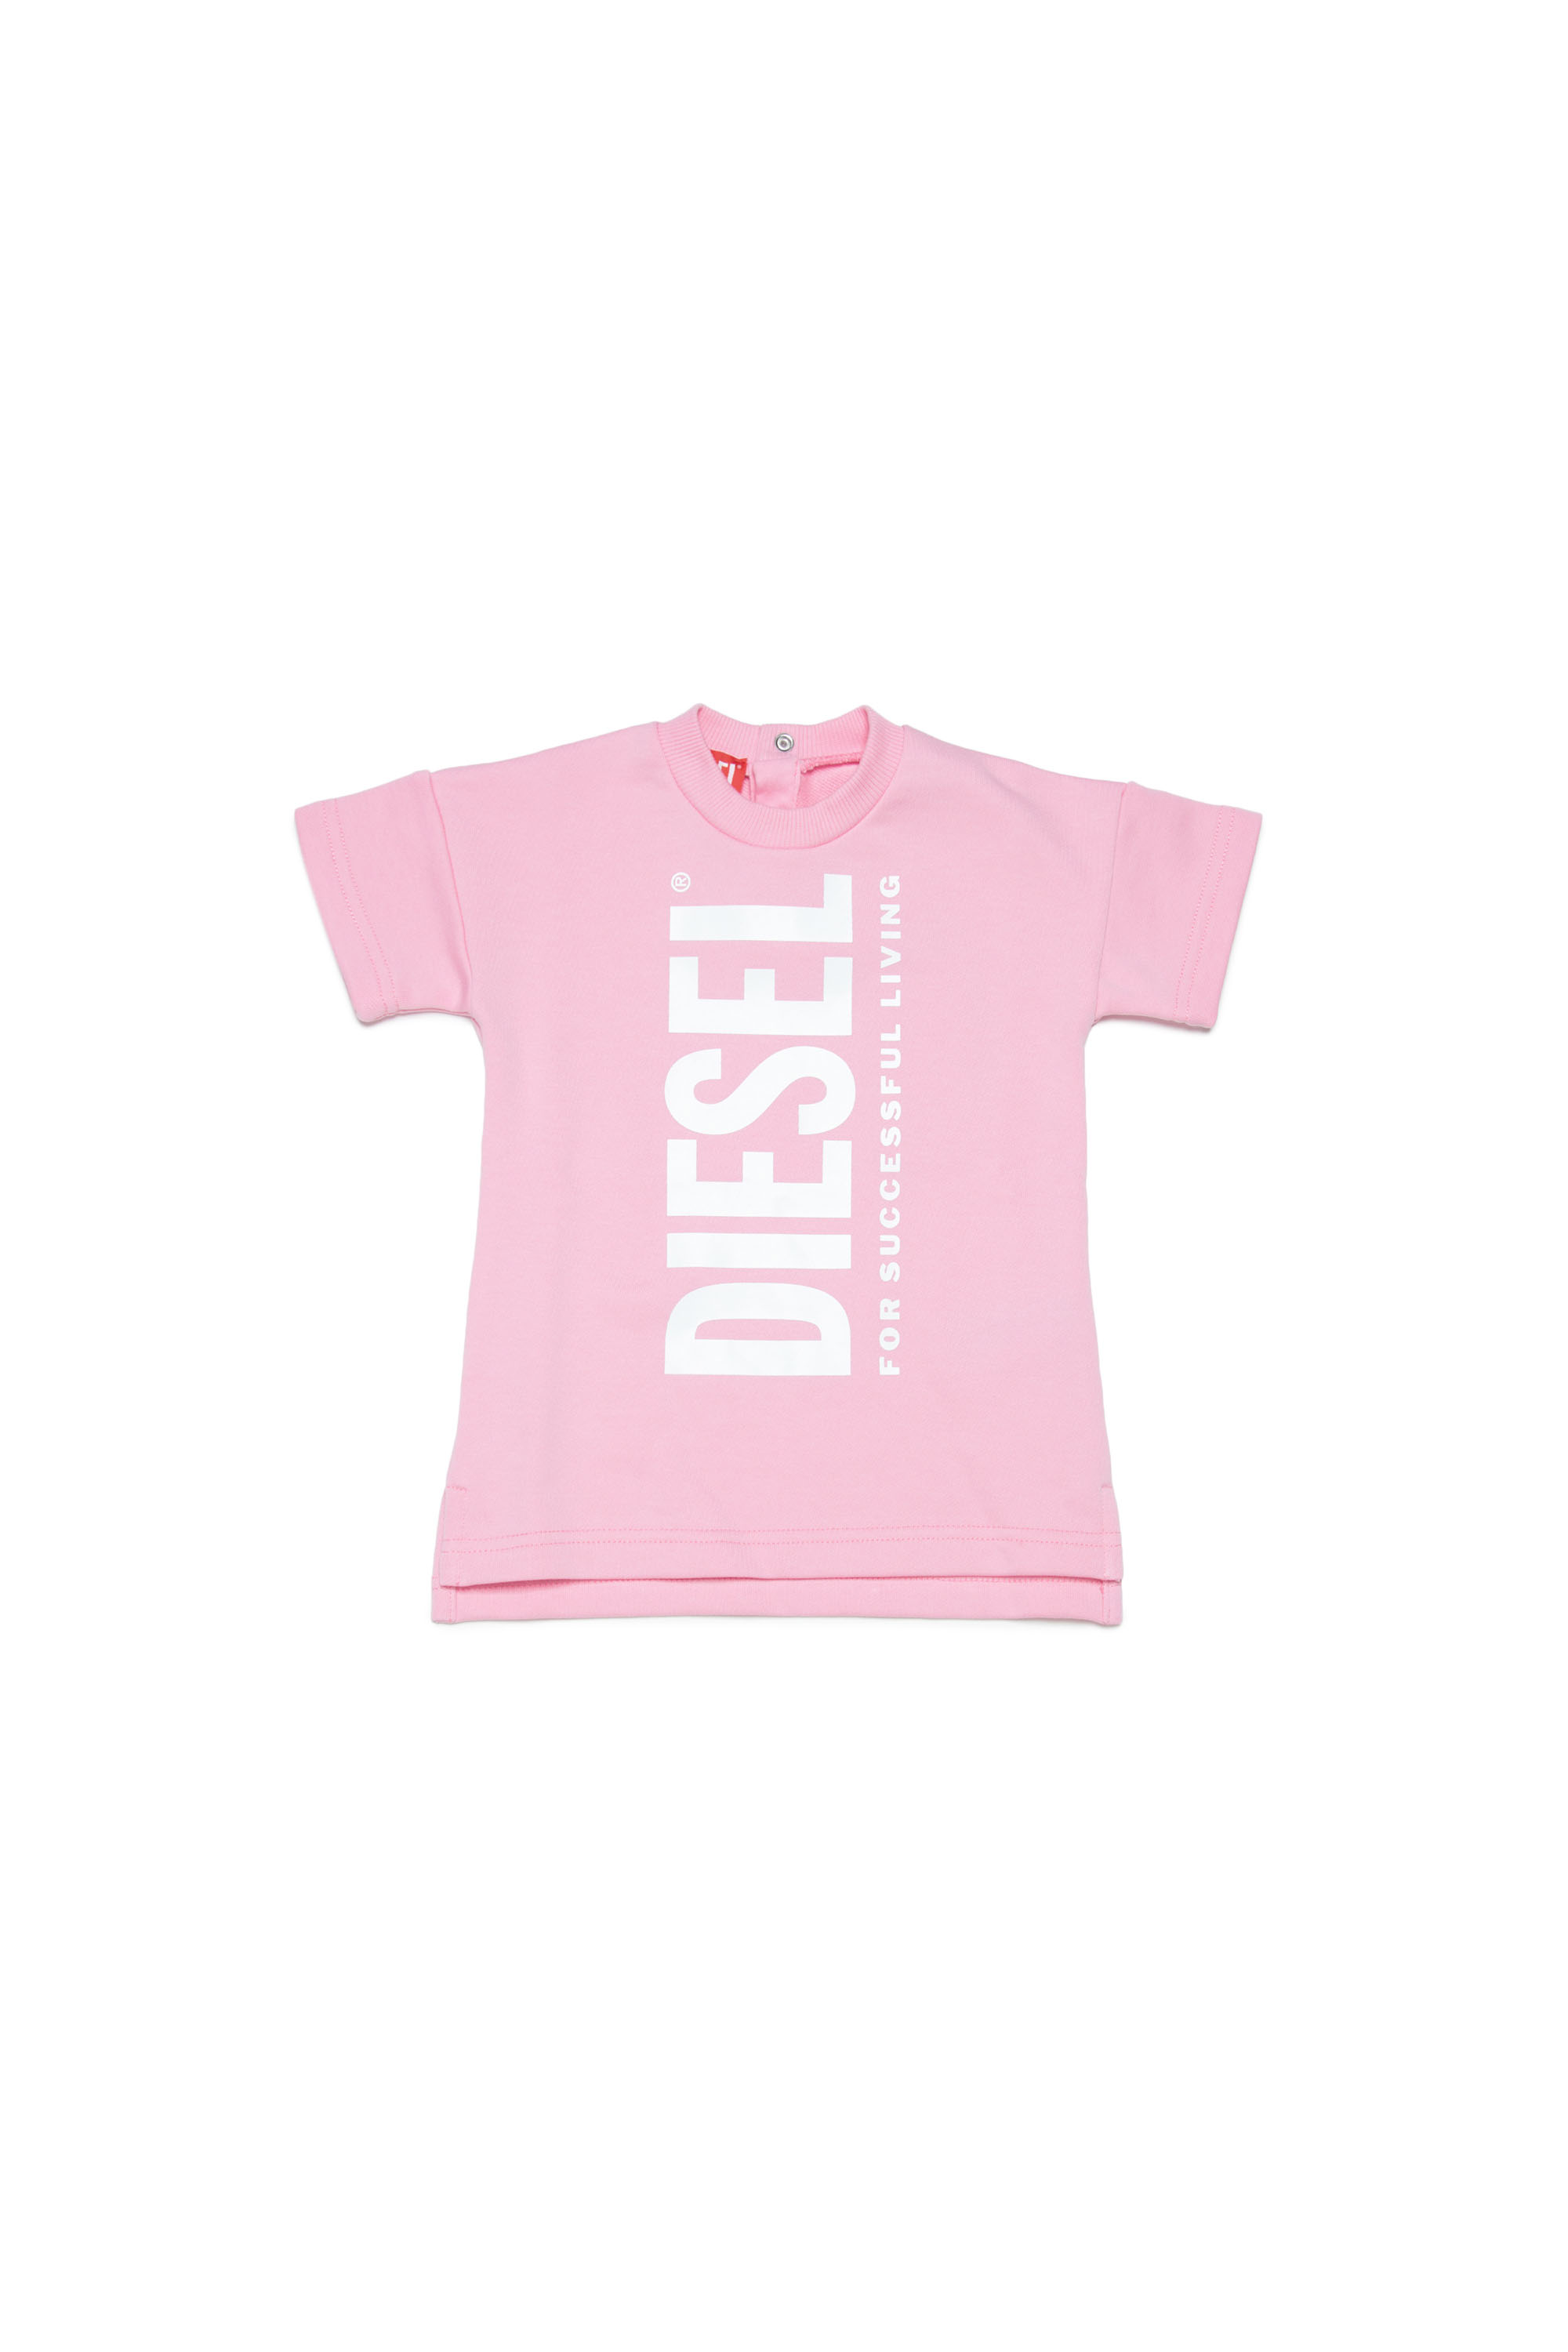 Diesel - DESLIB, Pink - Image 1